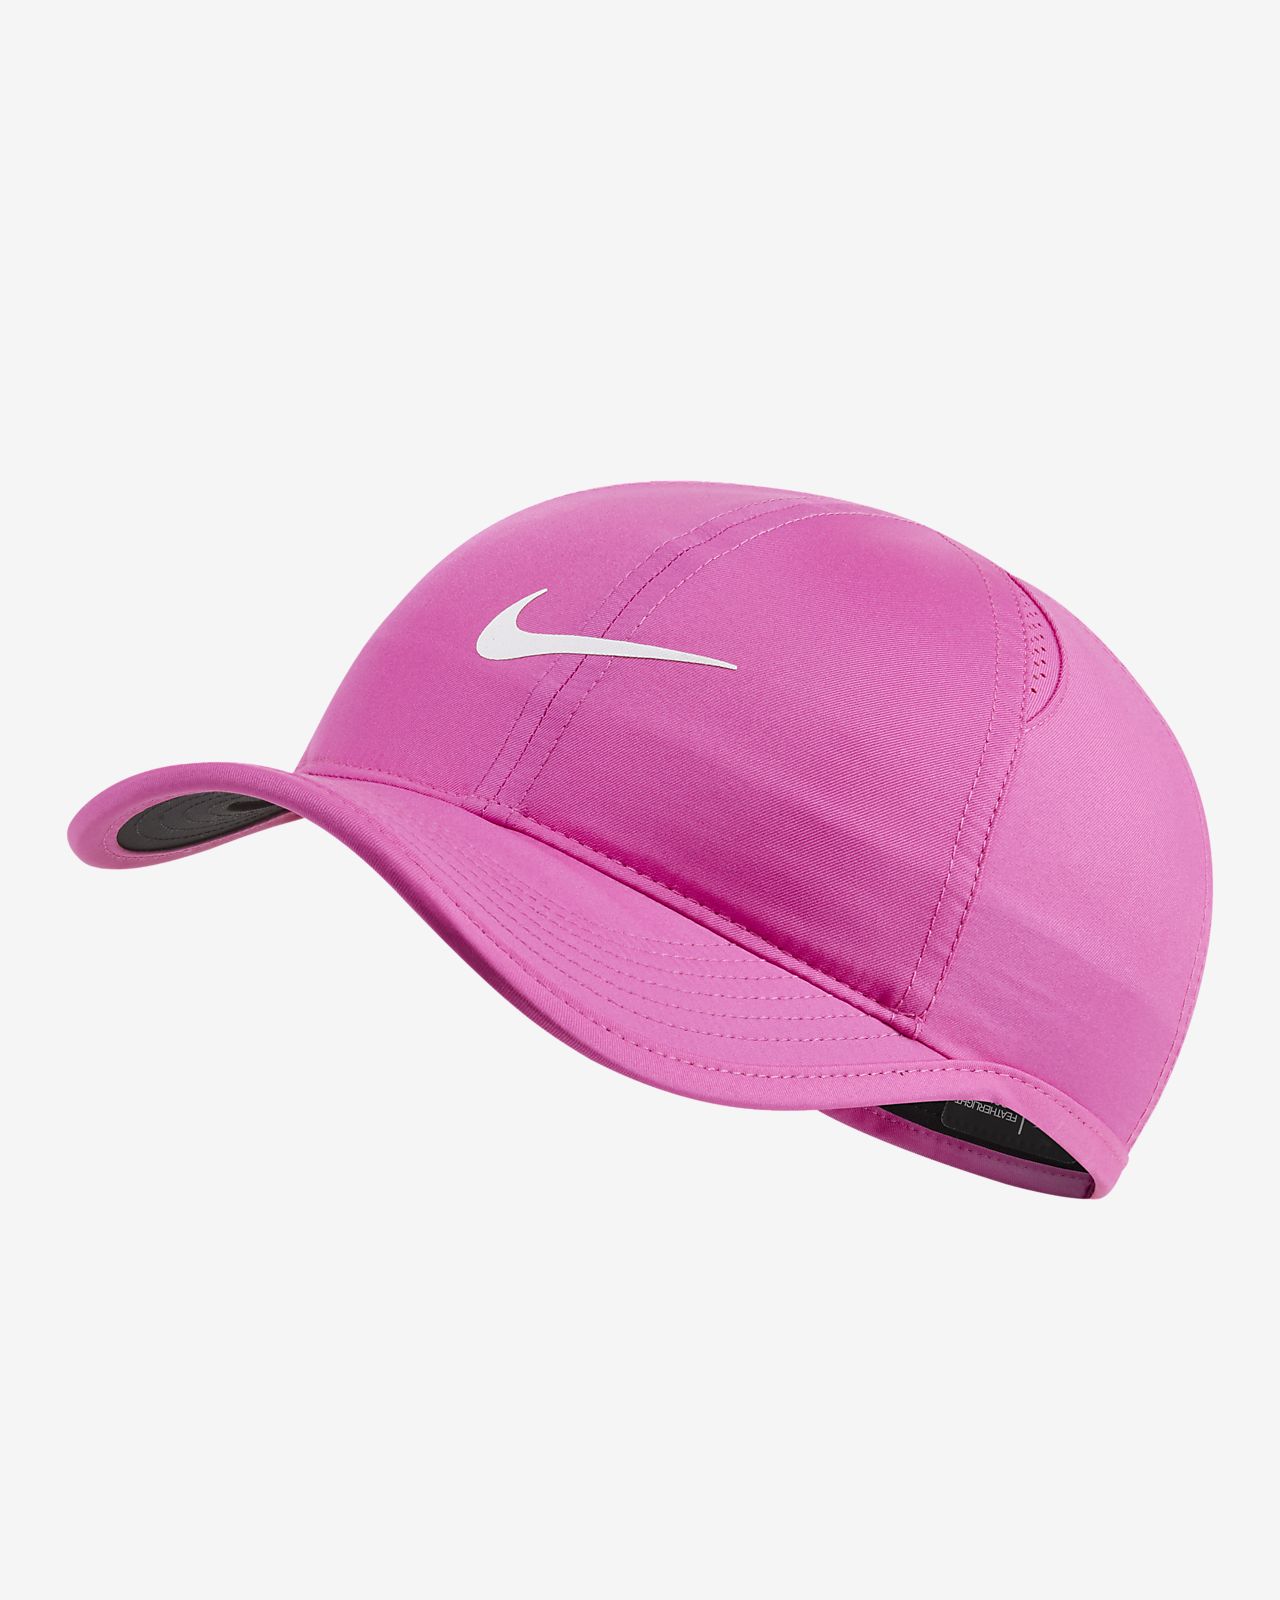 pink hat nike